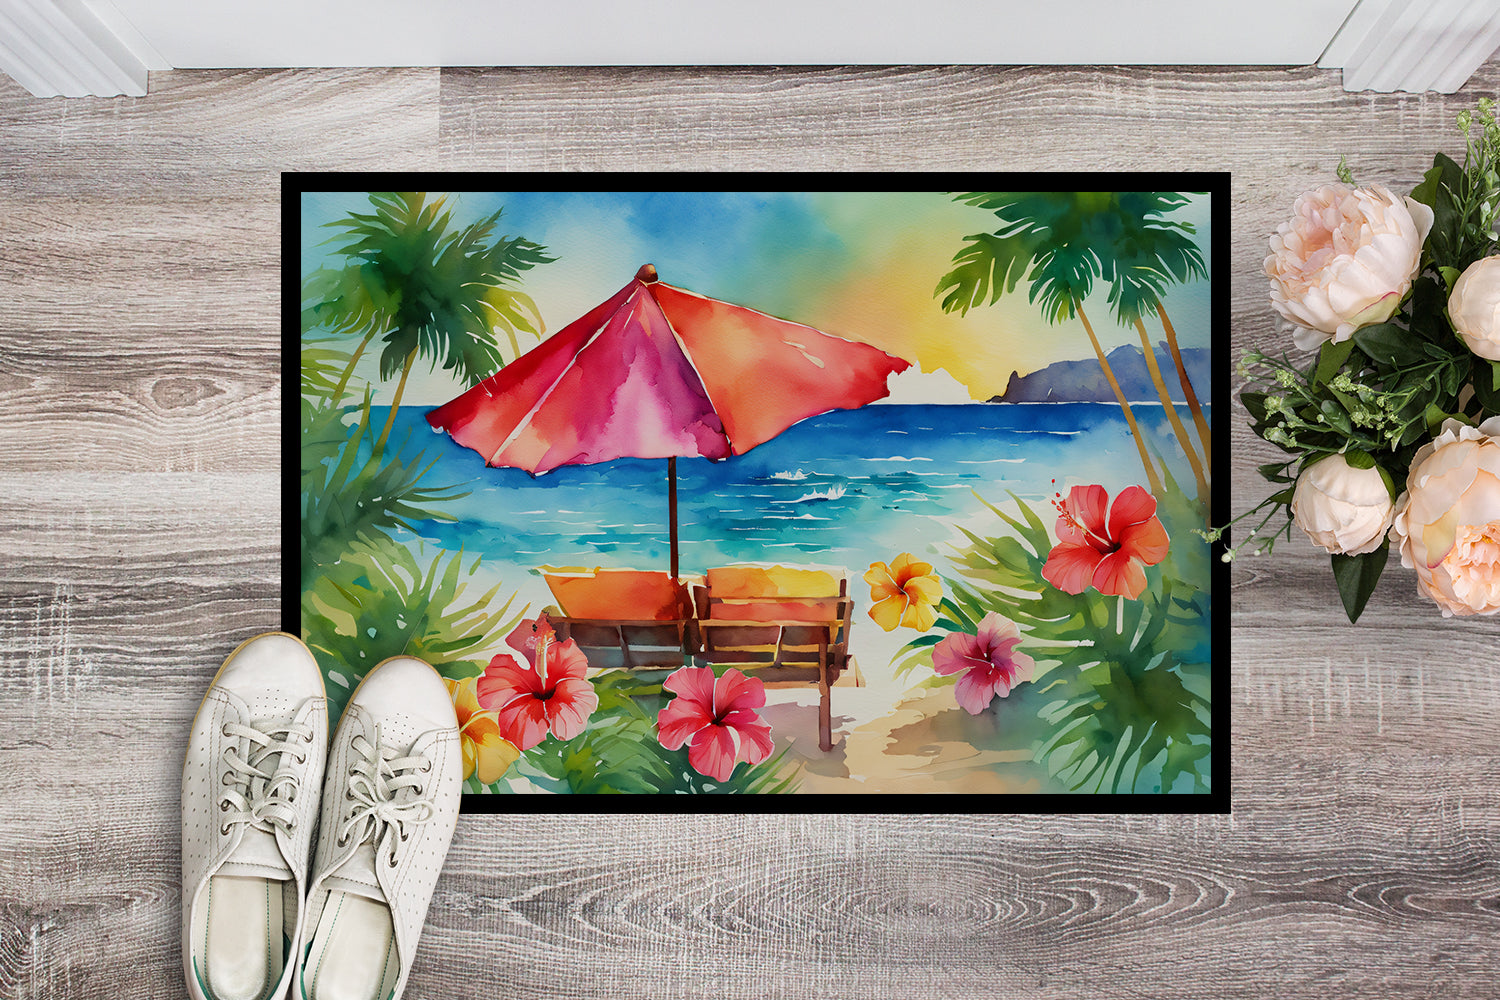 Buy this Hawaii Hawaiian Hibiscus in Watercolor Indoor or Outdoor Mat 24x36